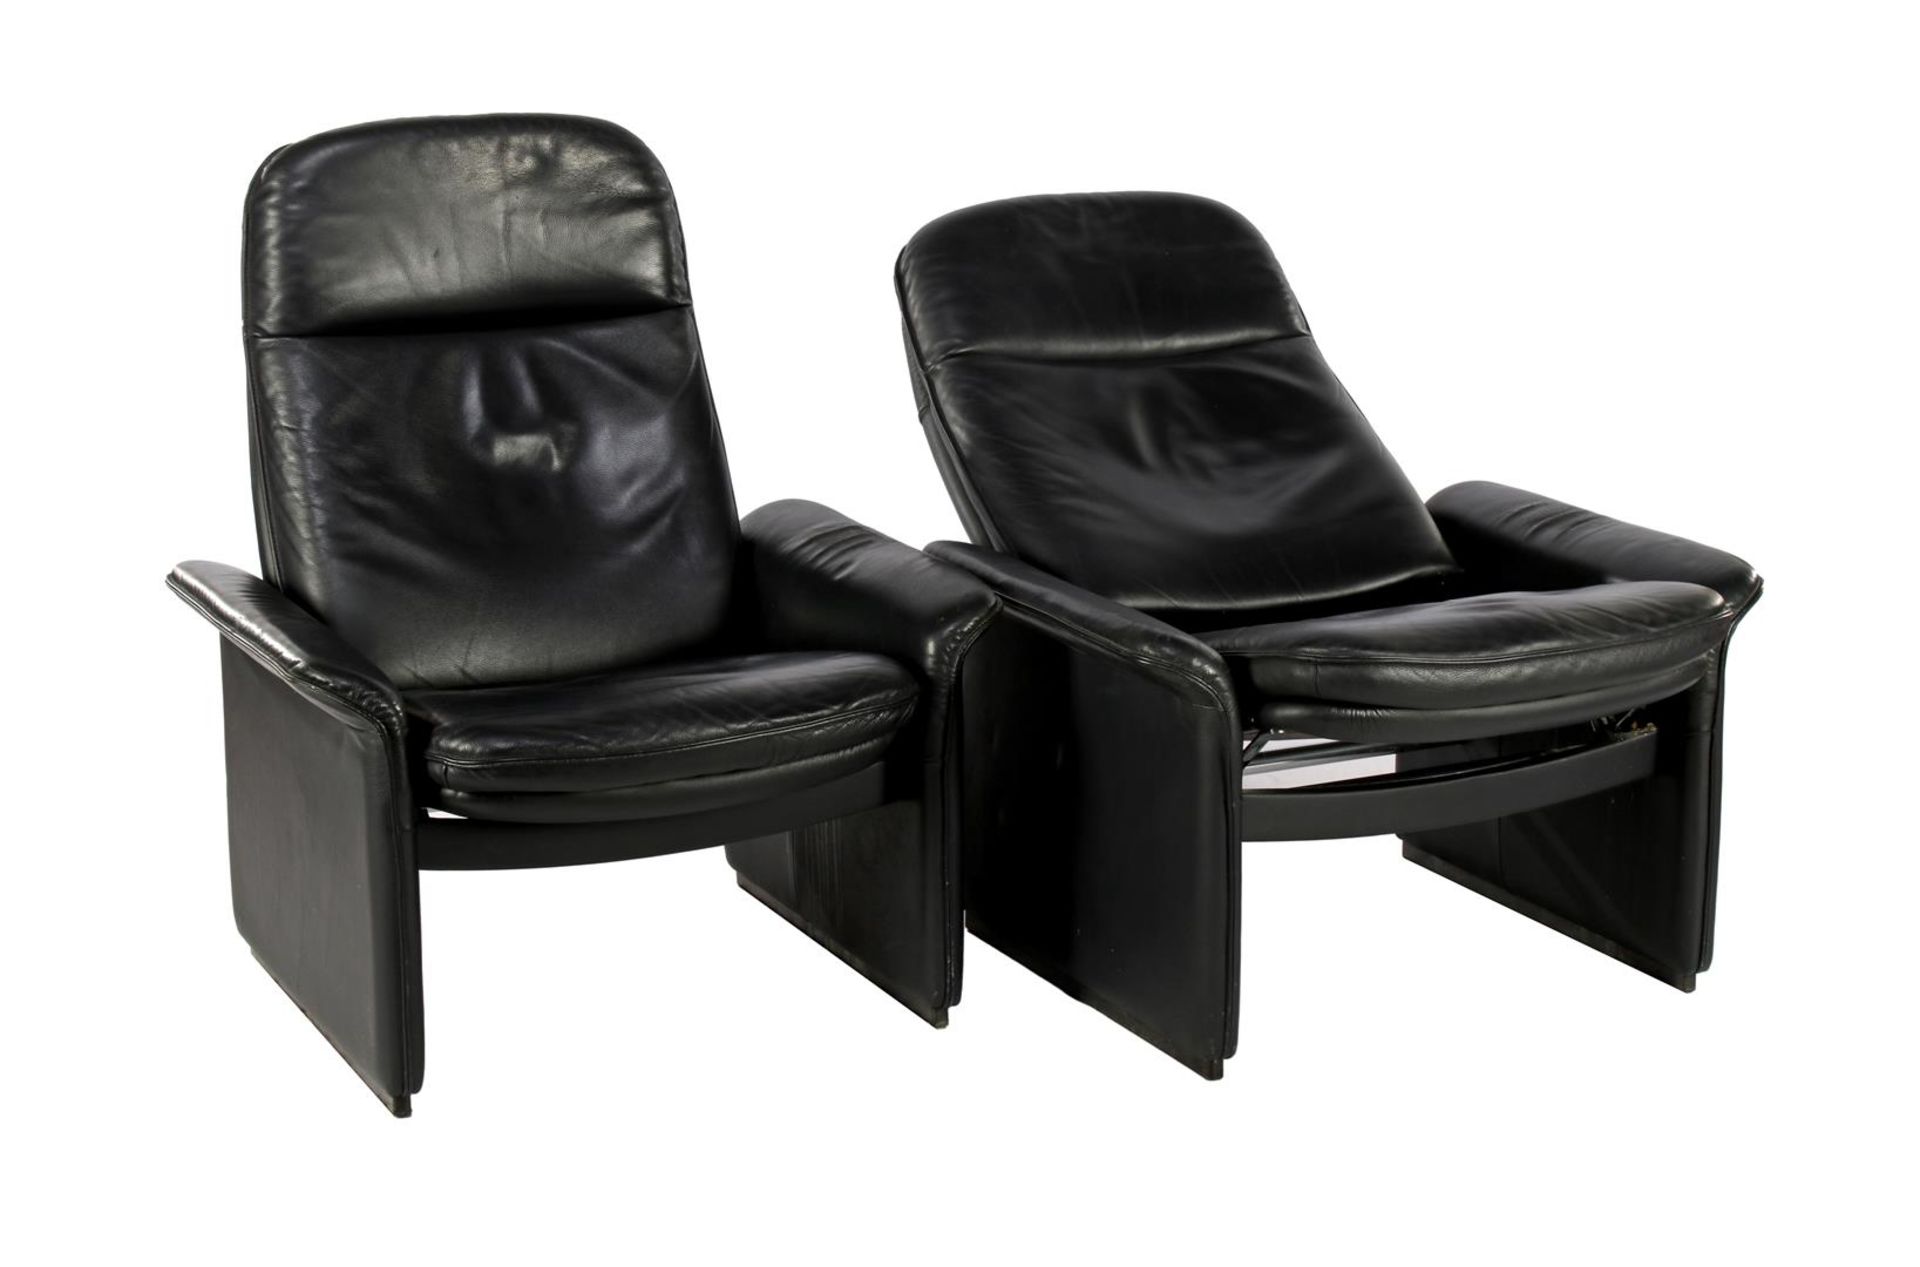 De Sede, 2 leather adjustable recliners